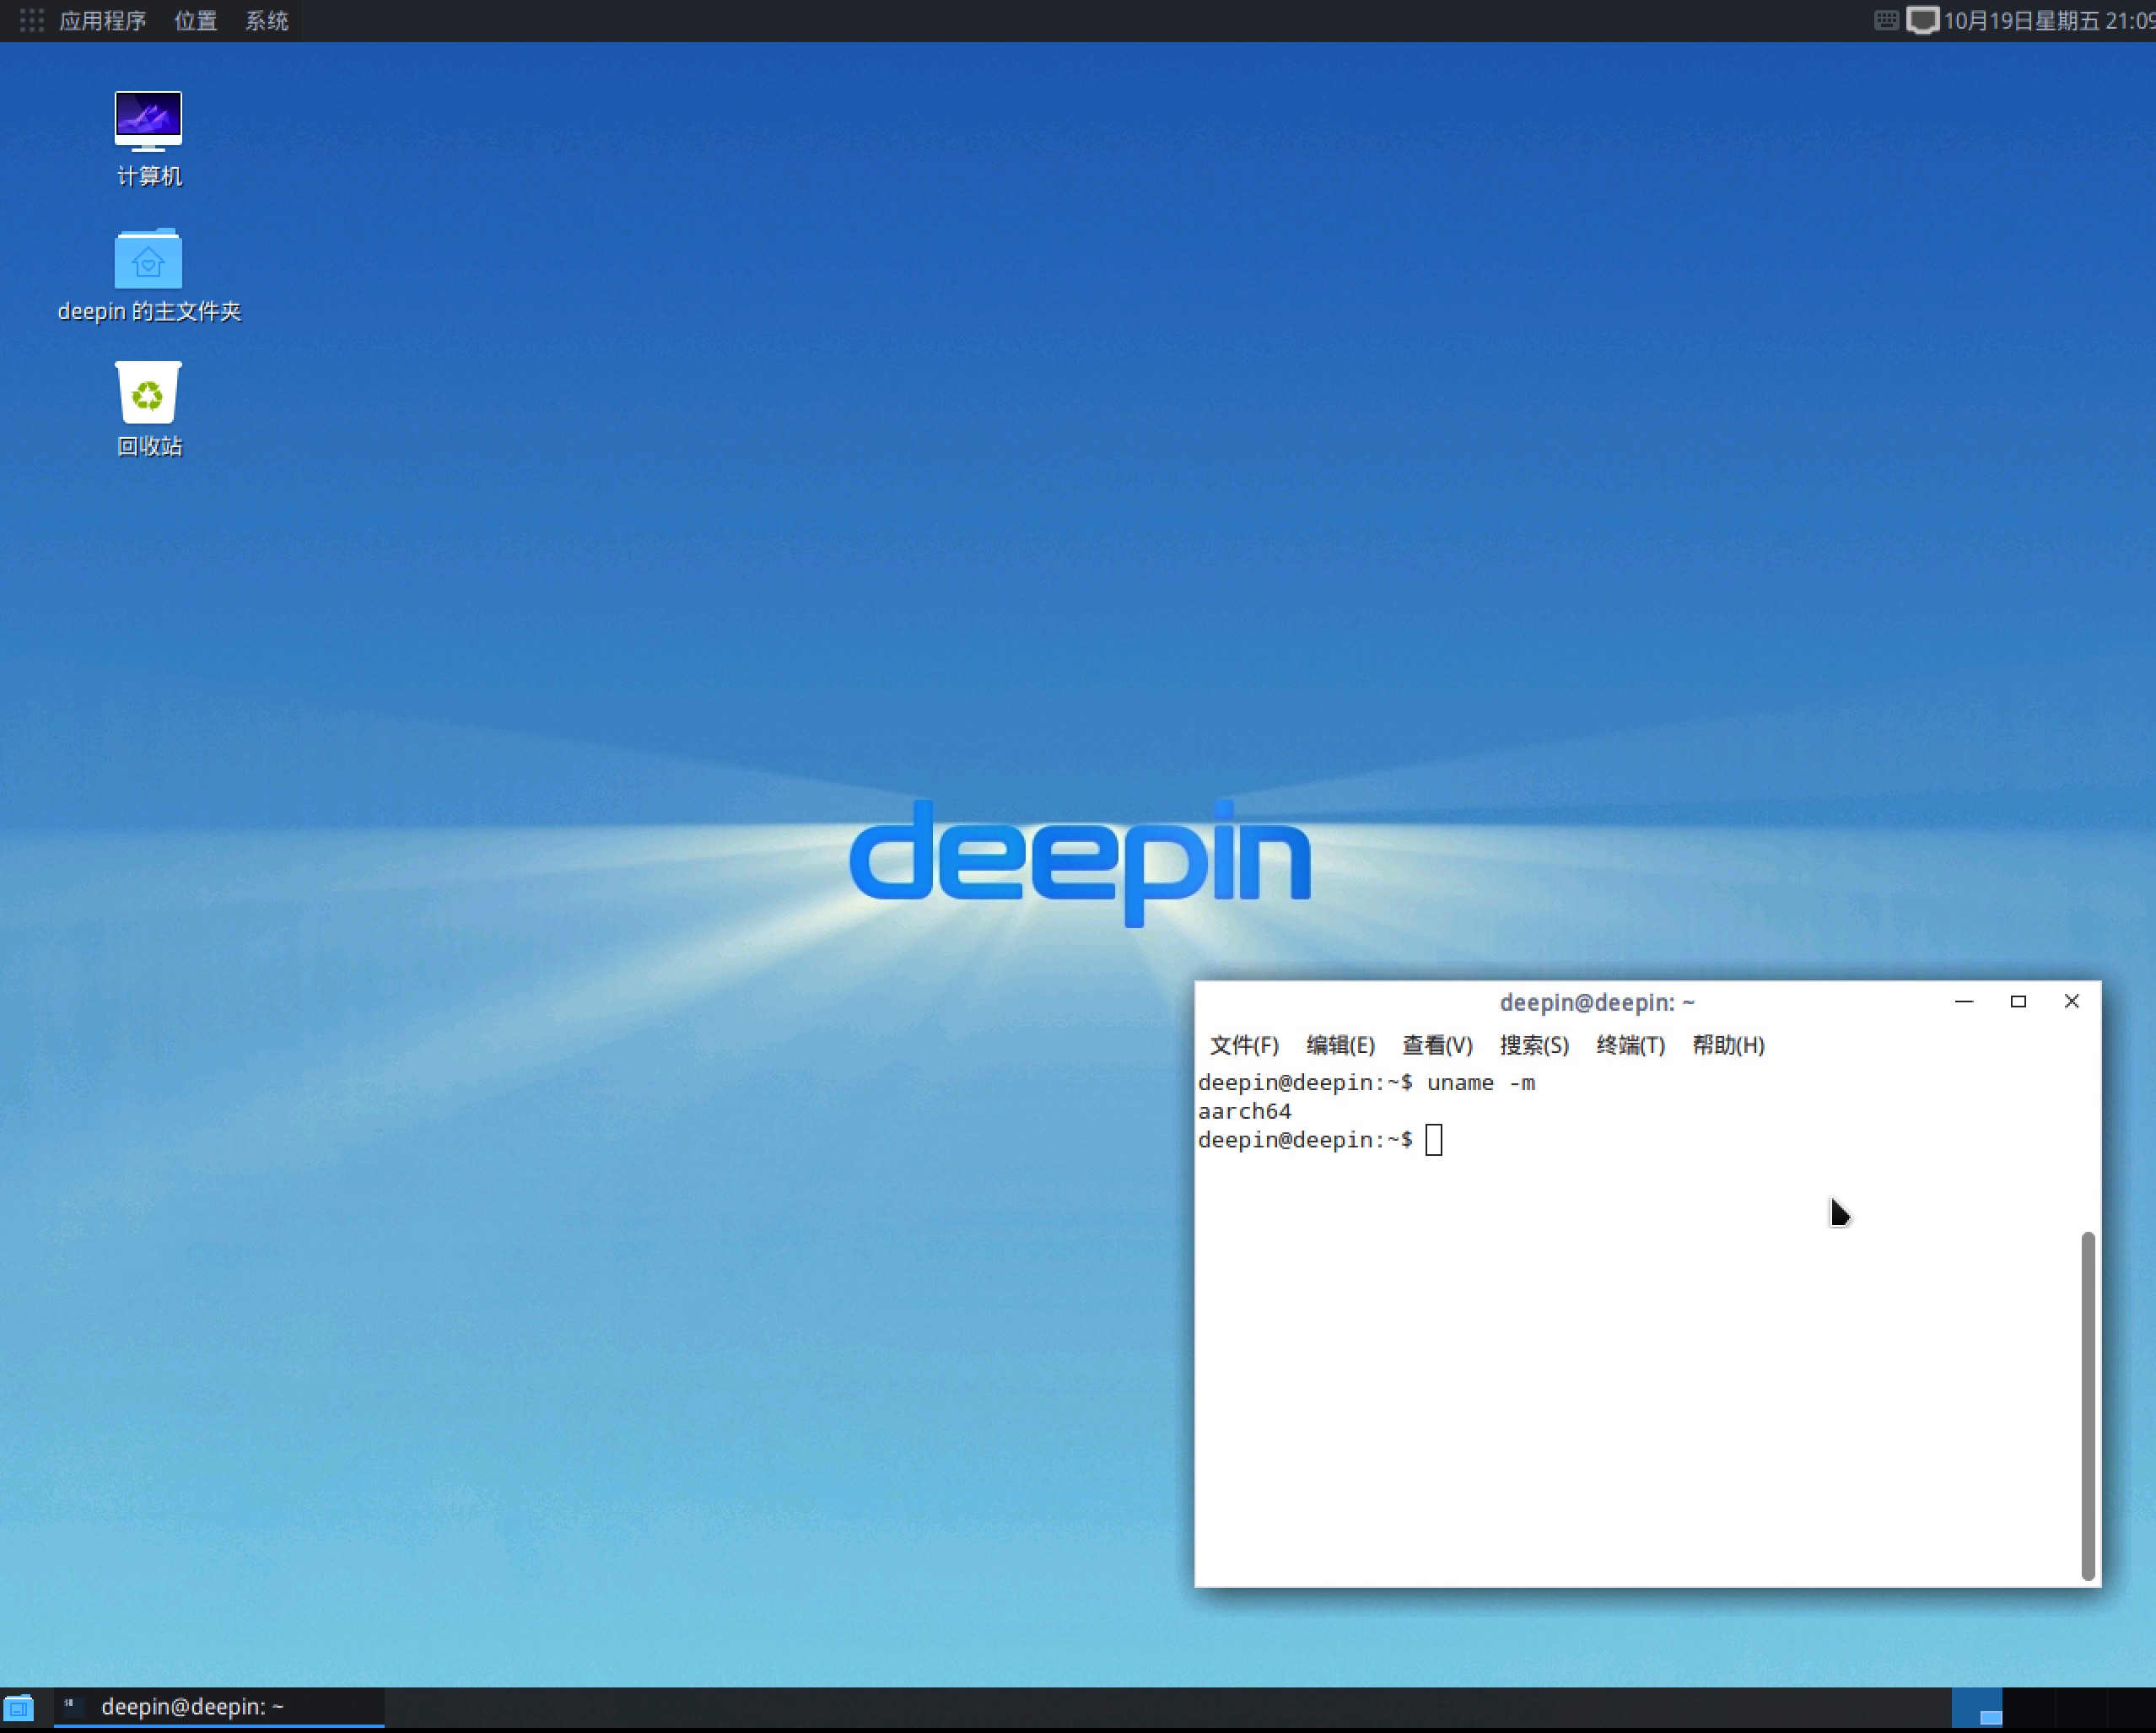 深度操作系统海思平台服务器版软件 V15.2 产品发布